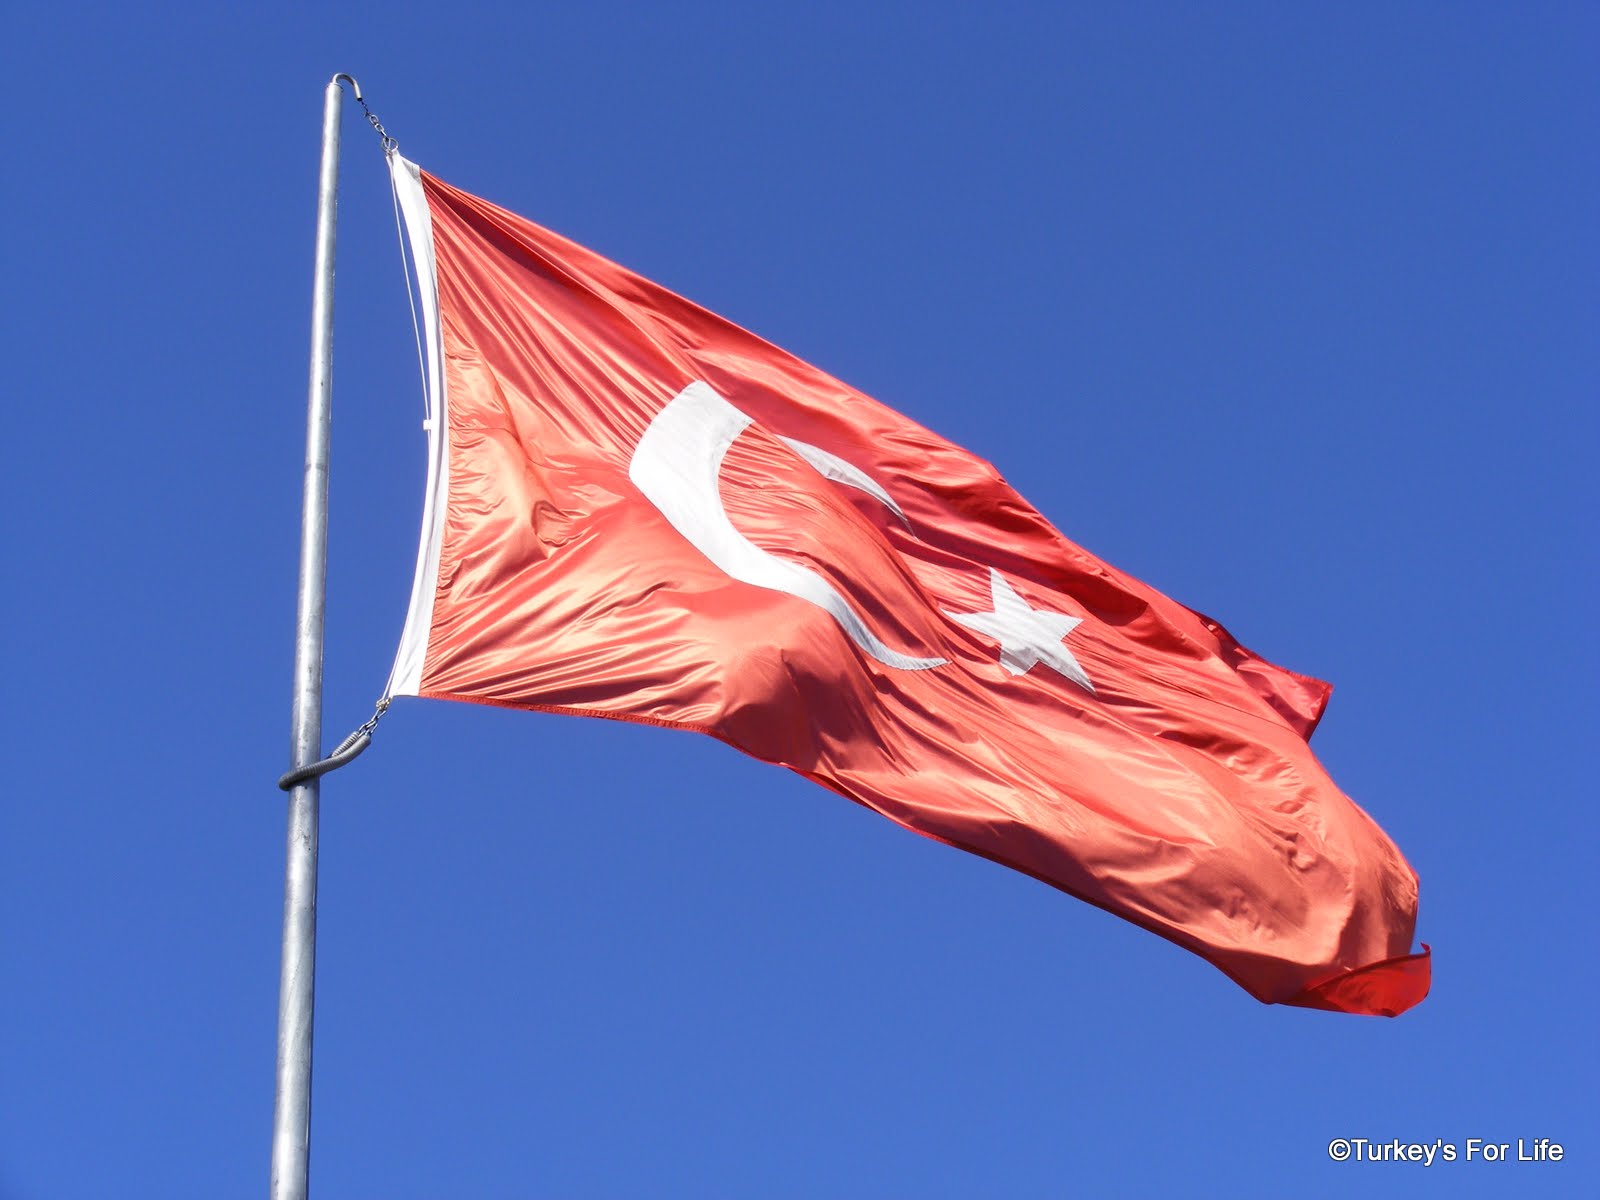 “Τελειώνει το οικονομικό θαύμα της Τουρκίας”